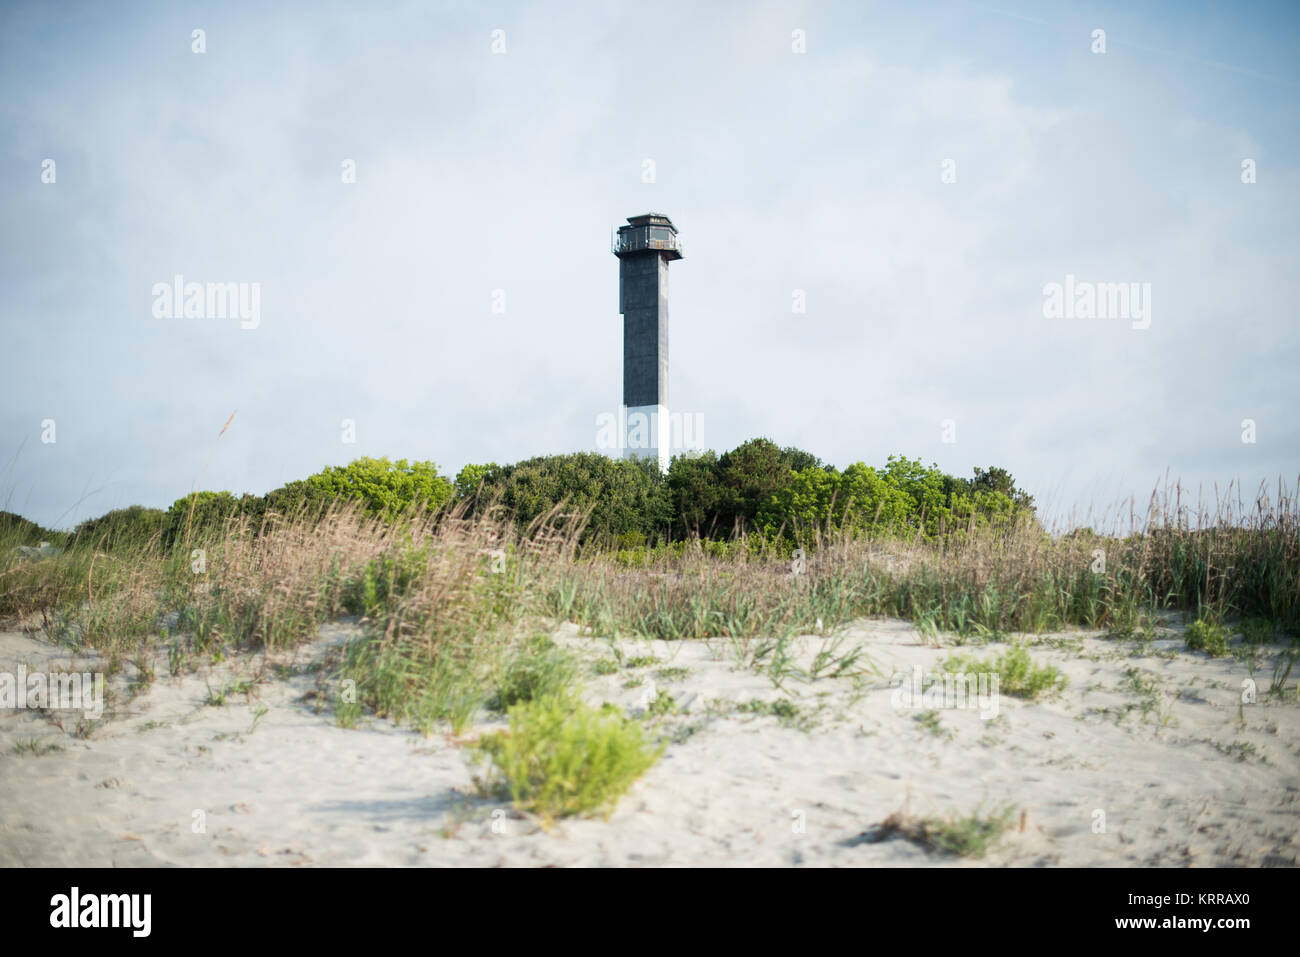 SULLIVAN'S ISLAND, South Carolina - auf der südöstlichen Ecke von Sullivan's Island, nicht weit entfernt von der Einfahrt in den Hafen von Charleston, Charleston Licht wurde im Jahr 1962 abgeschlossen, und der letzte große Leuchtturm in den Vereinigten Staaten gebaut. Jetzt ist es ein historischer Ort in der Küstenwache der Vereinigten Staaten historische Bezirk als Teil des Fort Sumter National Monument. Stockfoto